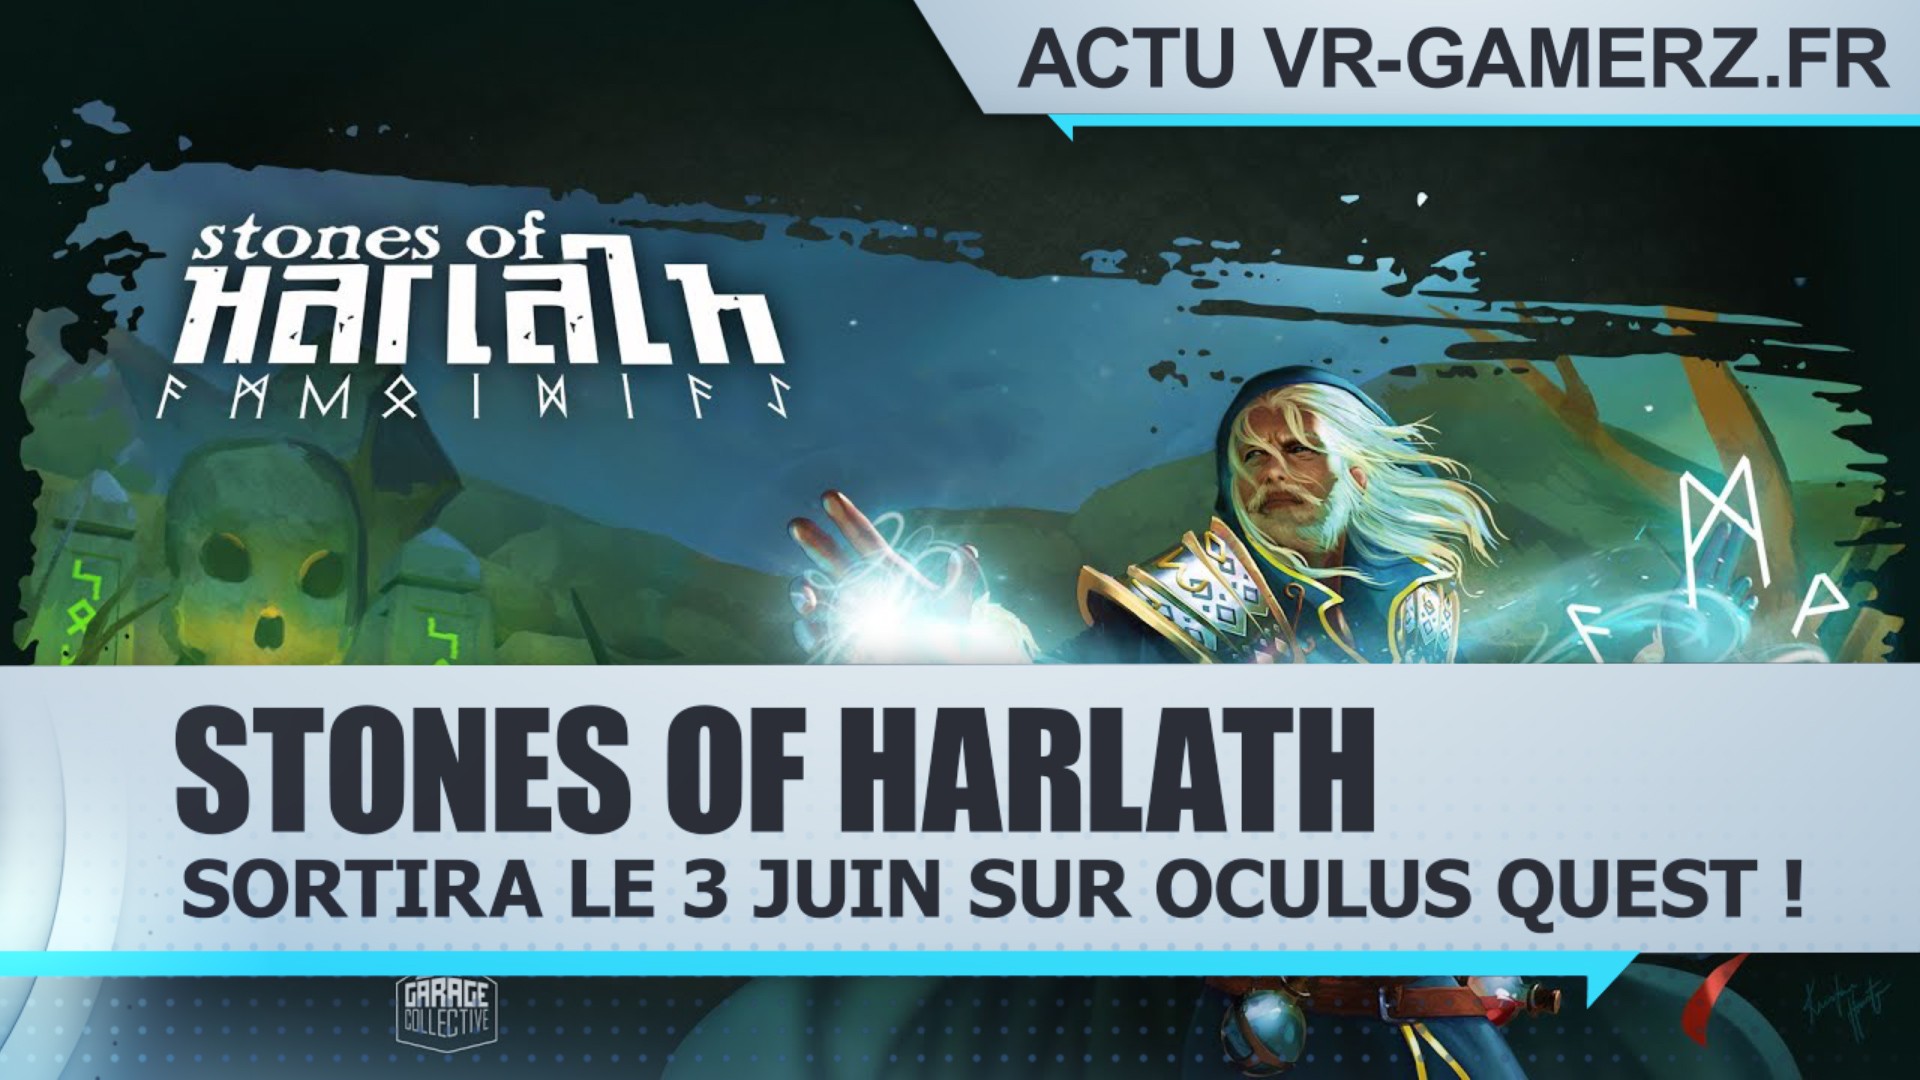 Stones Of Harlath sortira le 3 Juin sur Oculus quest !